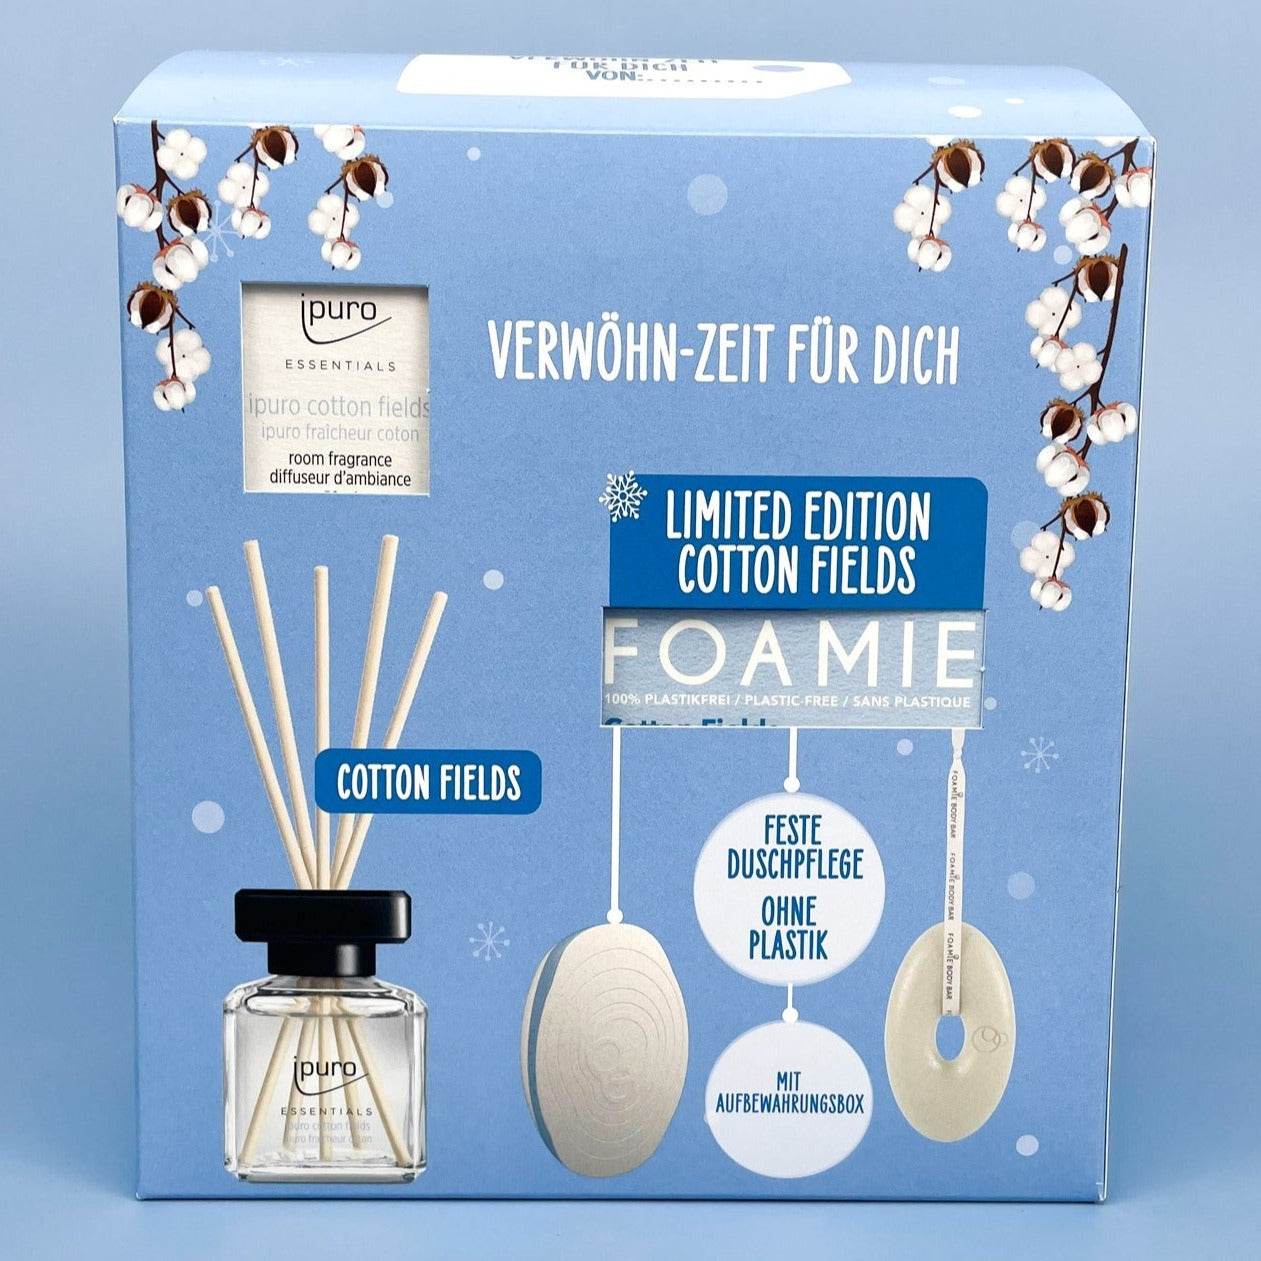 ipuro Essentials by Ipuro Cotton Fields ✔️ online kaufen